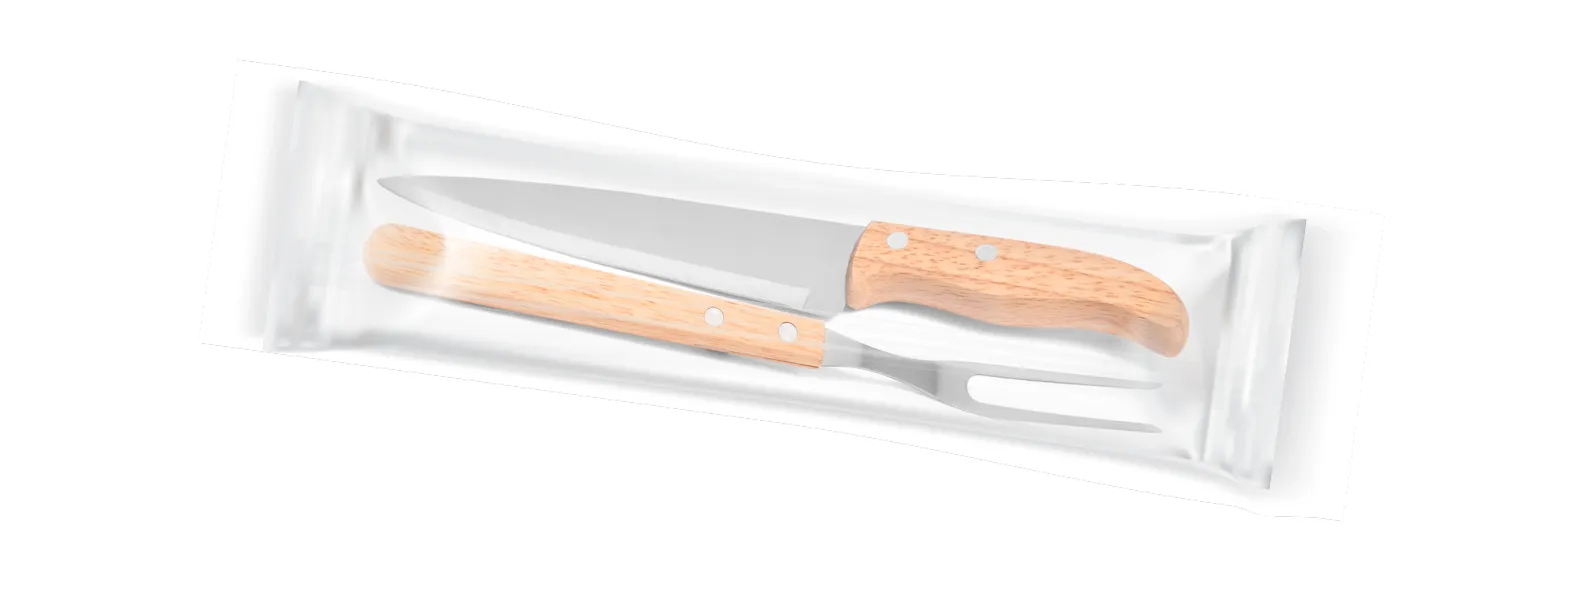 Conjunto de Faca em Madeira/Aço Inox; Acompanha faca 7'' e garfo em Madeira/Inox. Como cortesia, fazemos uma gravação na lâmina da faca com os cortes do boi.